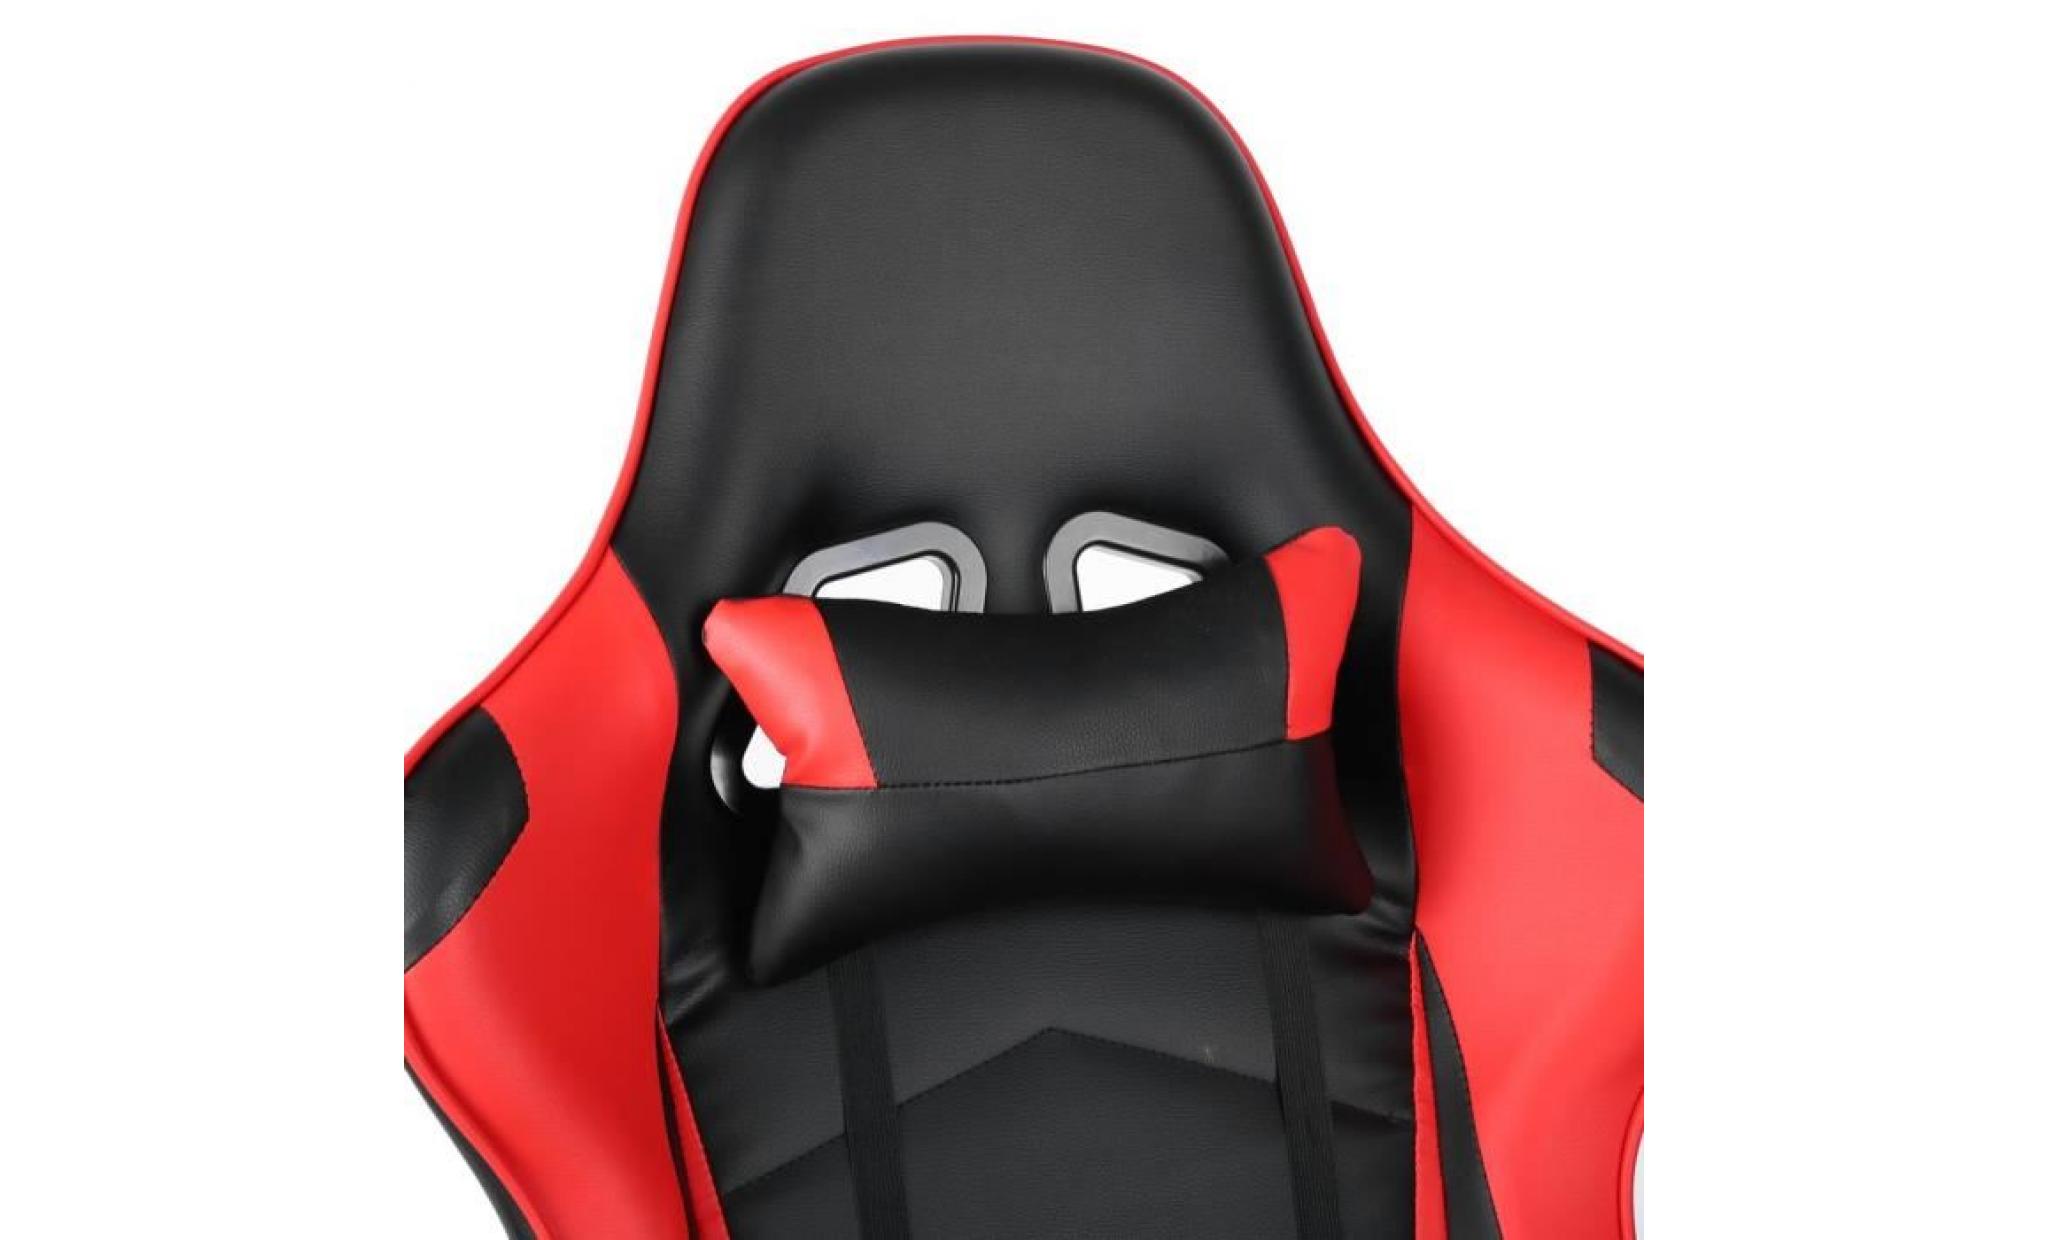 fauteuil gaming chaise de jeu rouge en faux cuir excellente stabilité super confortable sige de gaming réglable pas cher